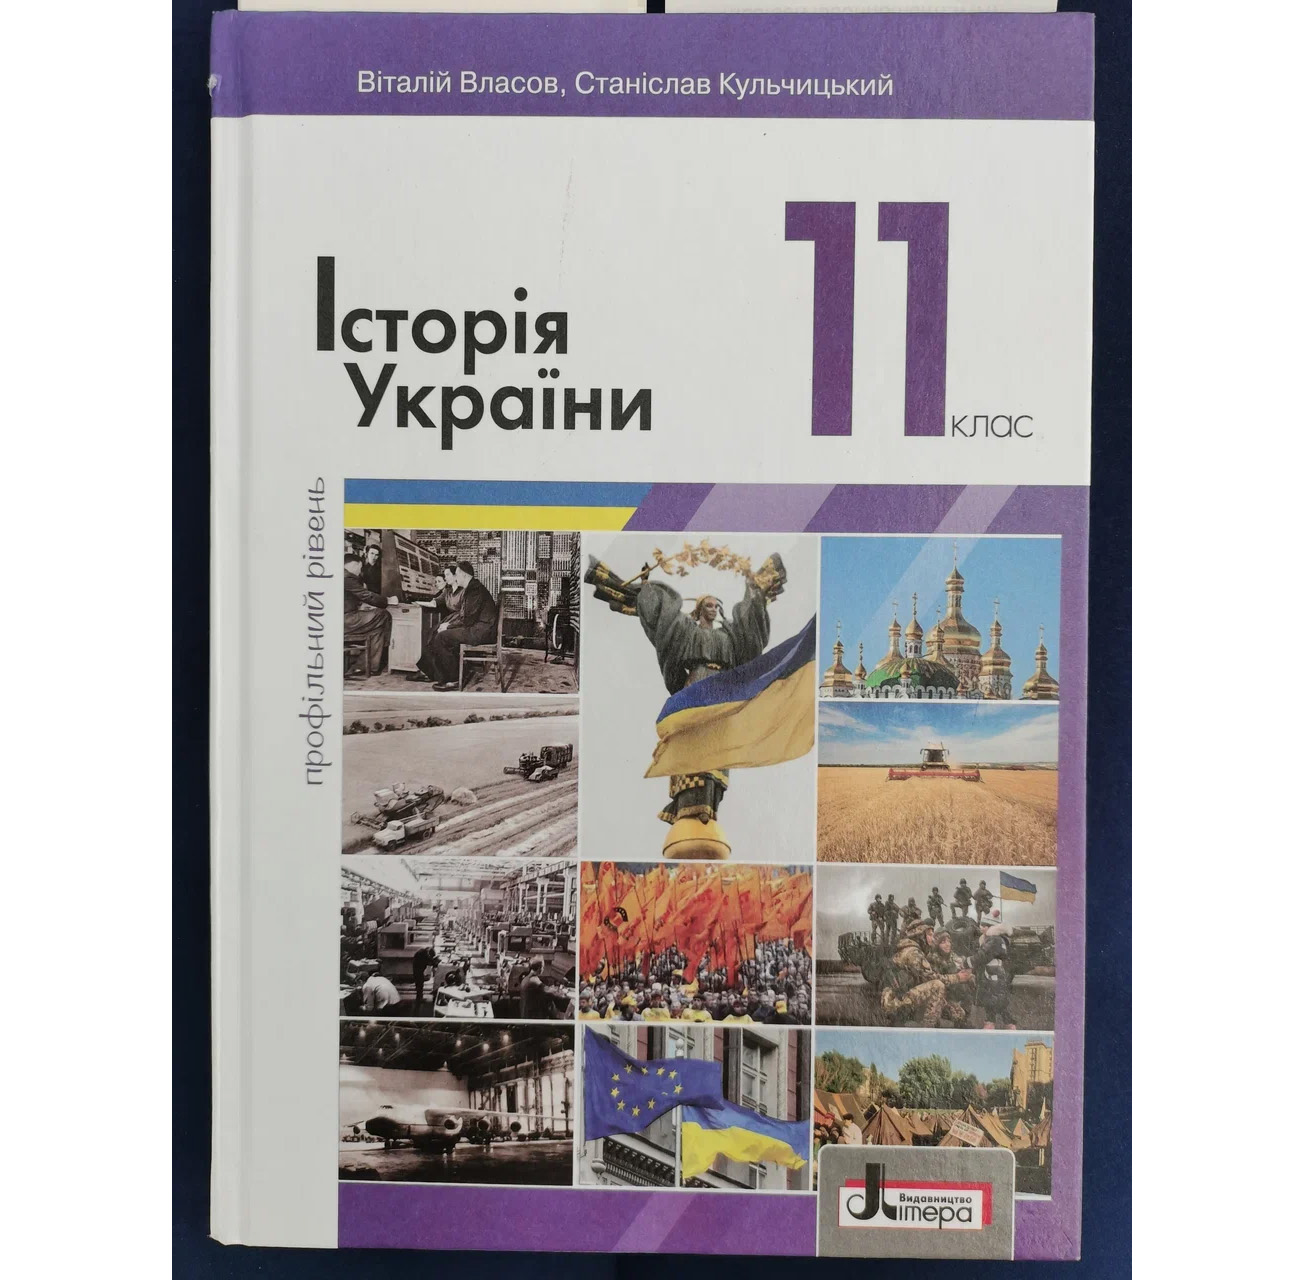 Утверждённый Министерством образования Украины учебник истории для 11-го класса. Фото © LIFE